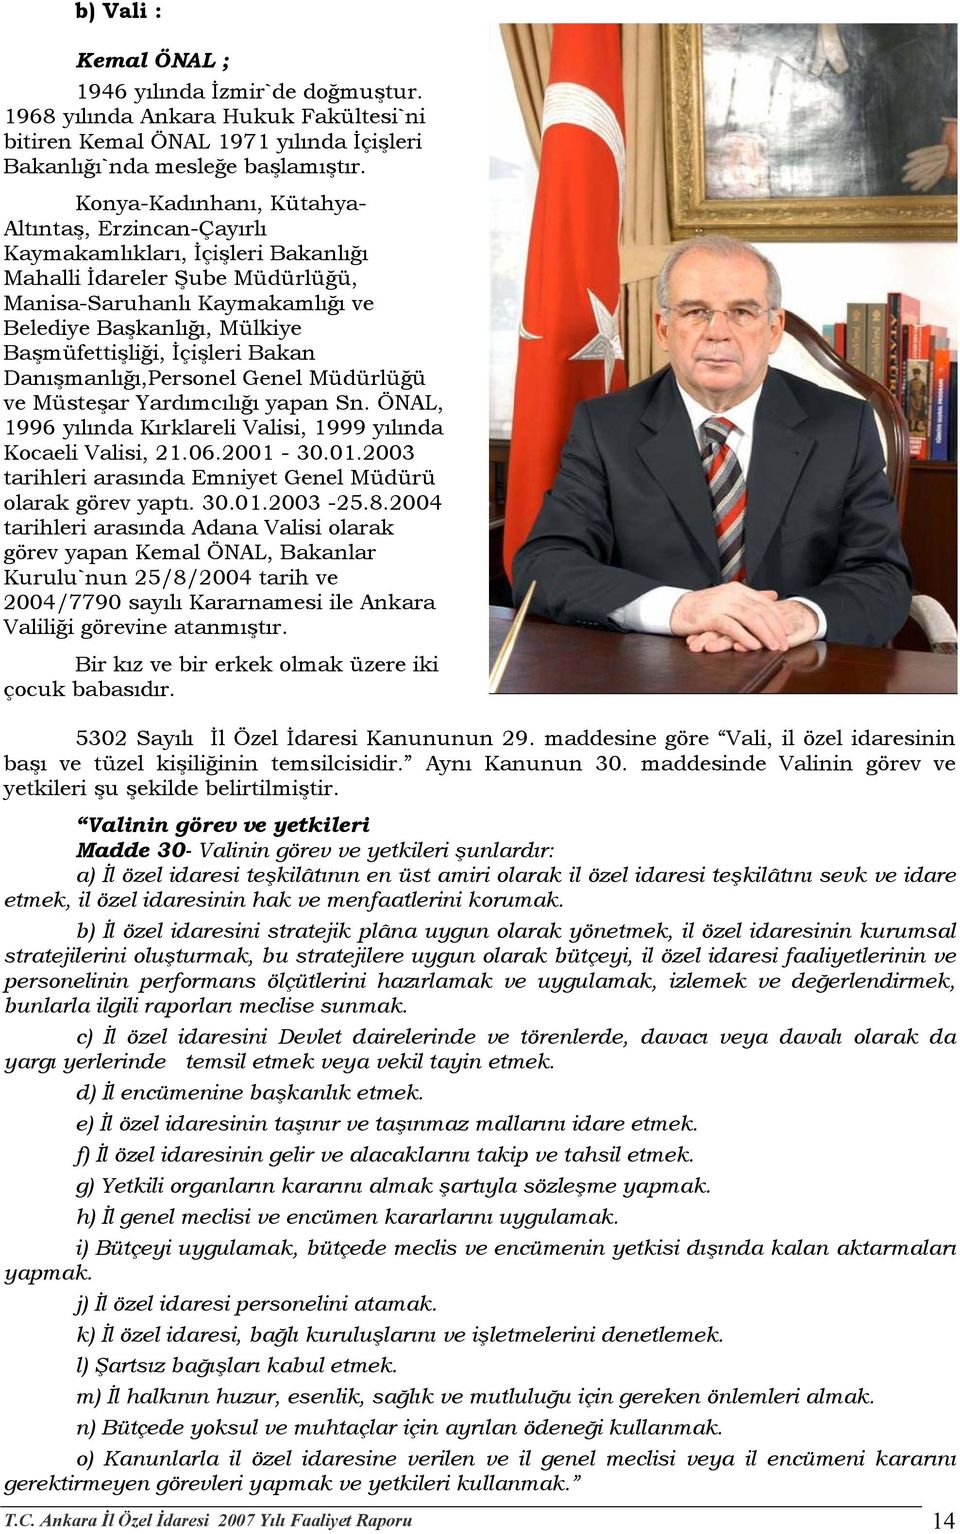 Başmüfettişliği, İçişleri Bakan Danışmanlığı,Personel Genel Müdürlüğü ve Müsteşar Yardımcılığı yapan Sn. ÖNAL, 1996 yılında Kırklareli Valisi, 1999 yılında Kocaeli Valisi, 21.06.2001-